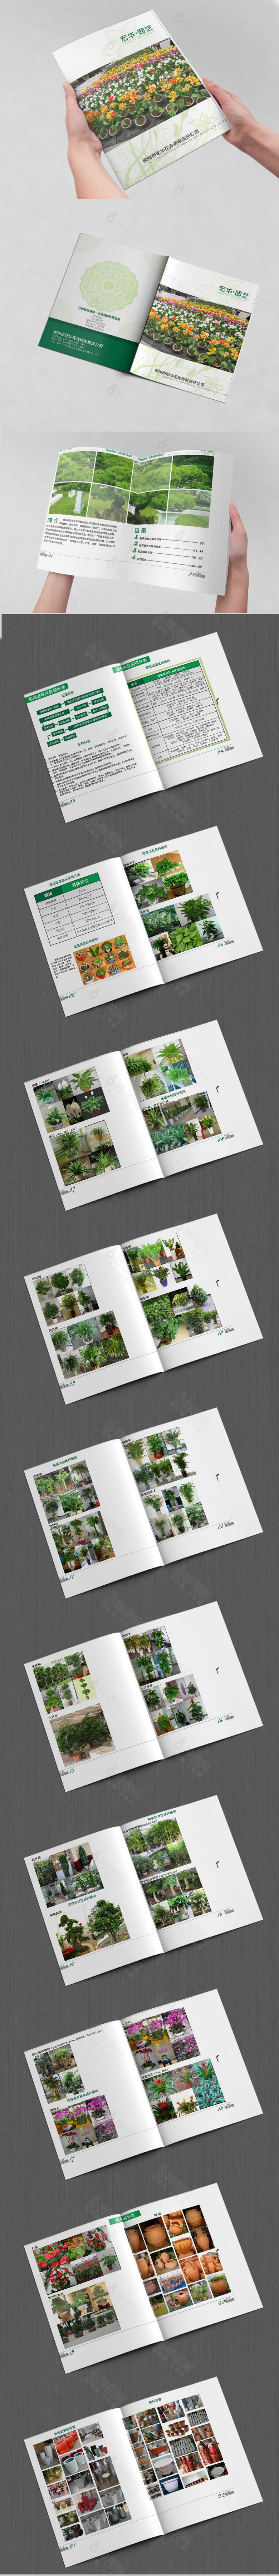 绿植花卉画册设计